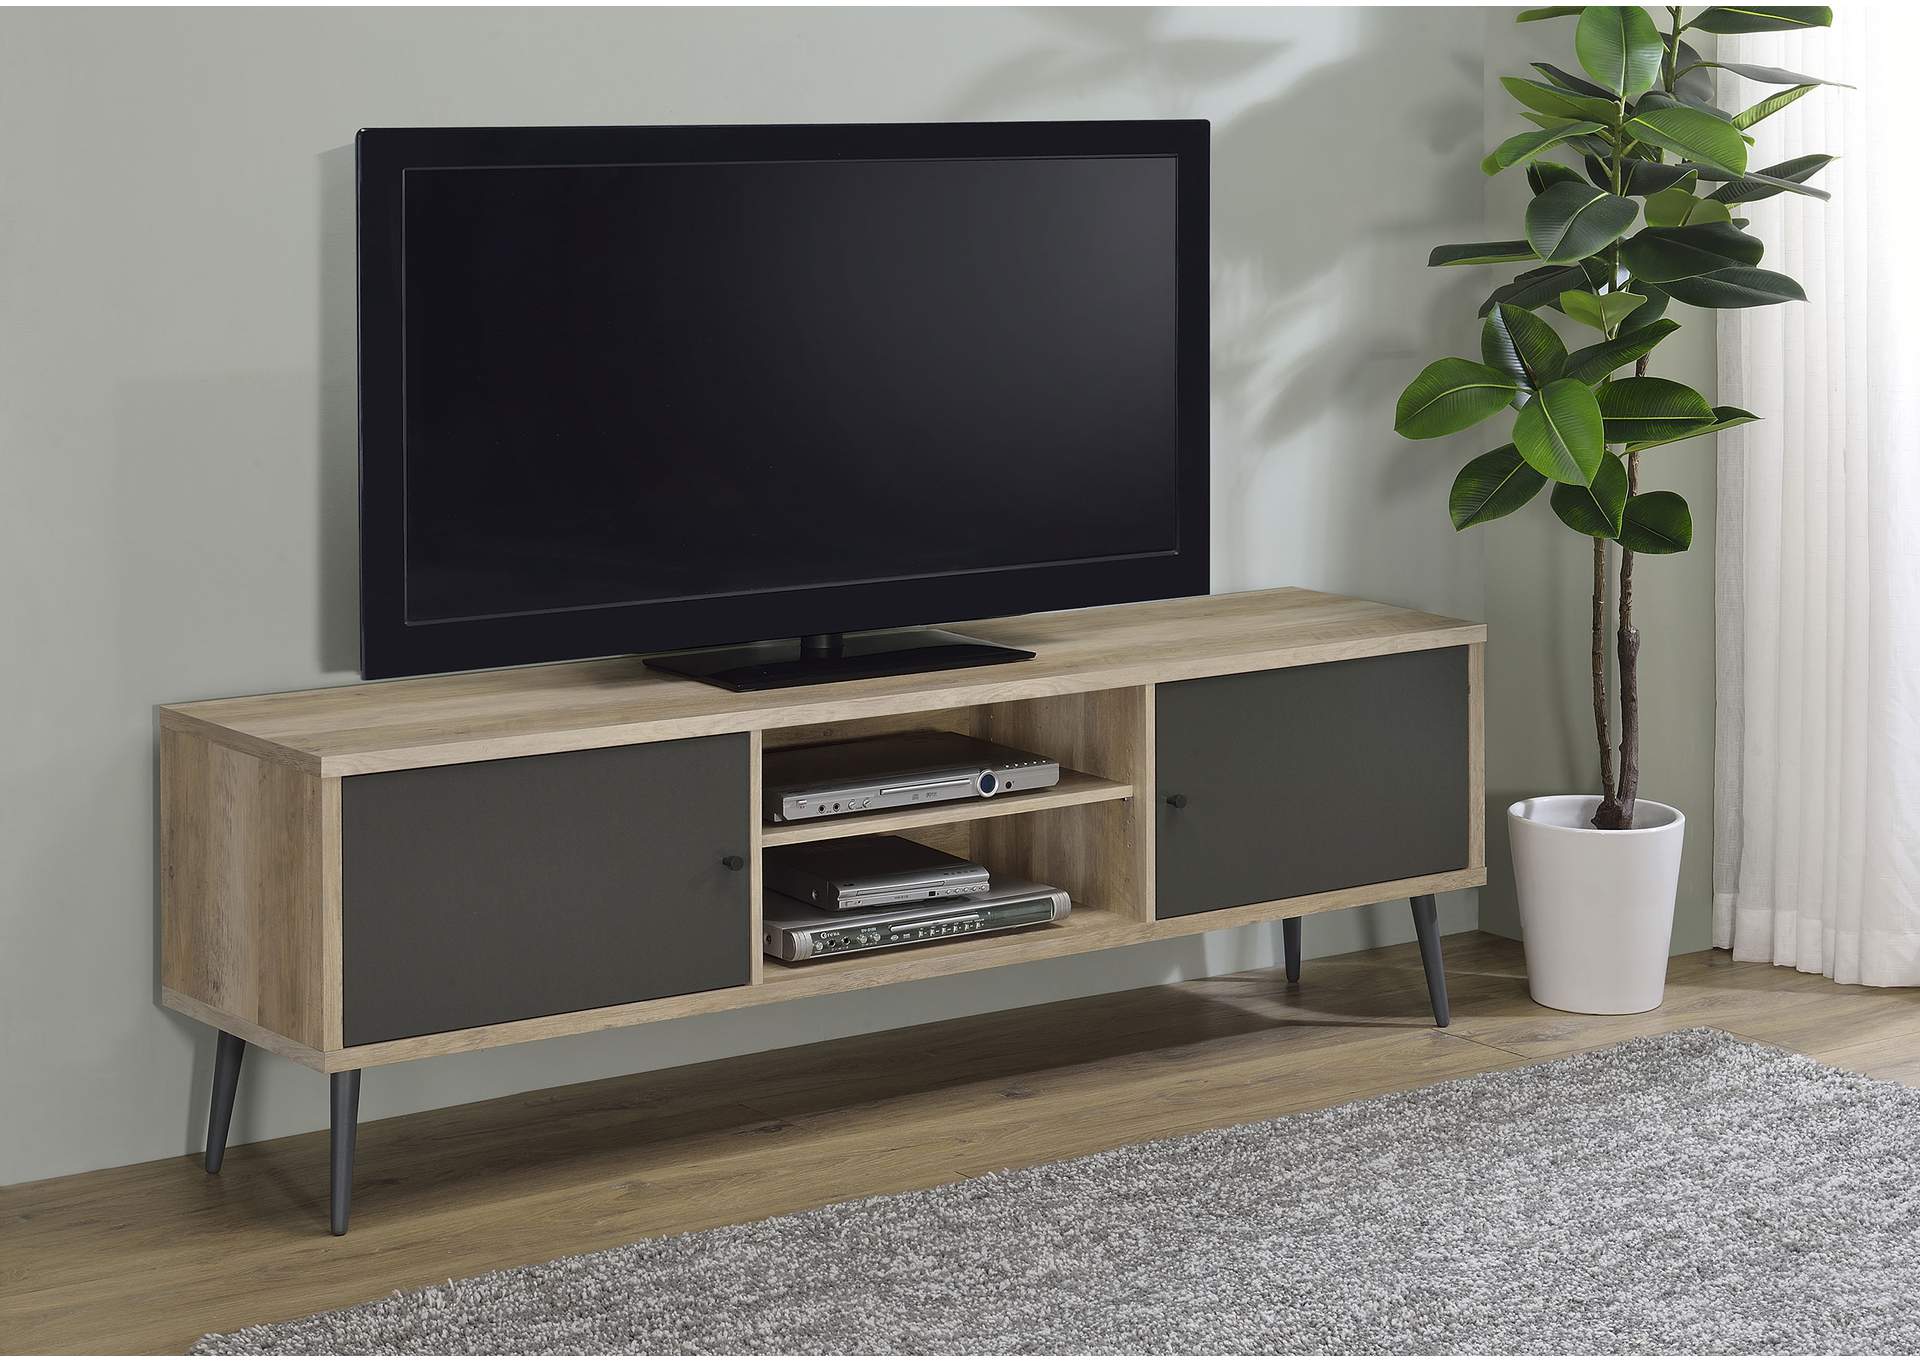 TV STAND,Coaster Furniture